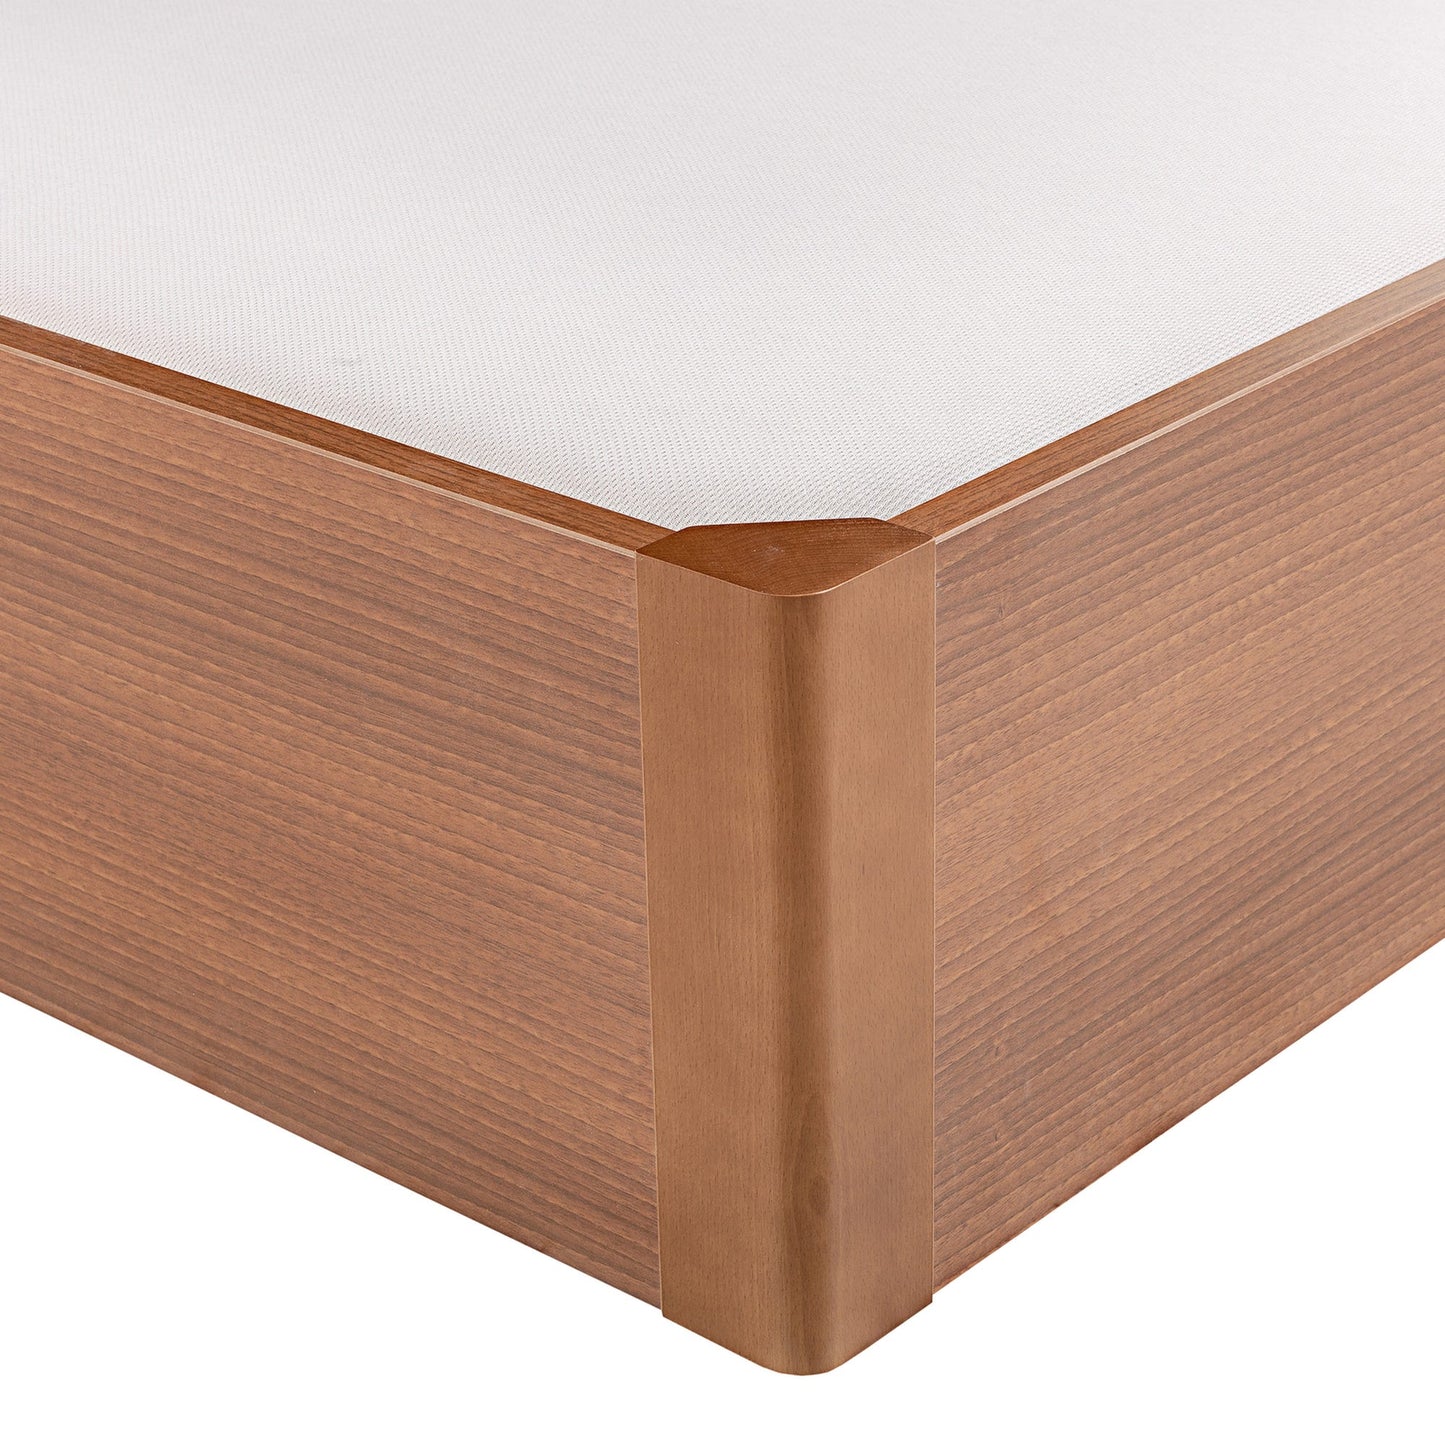 Canapé abatible de madera tapa única de color cerezo - DESIGN - 80x182